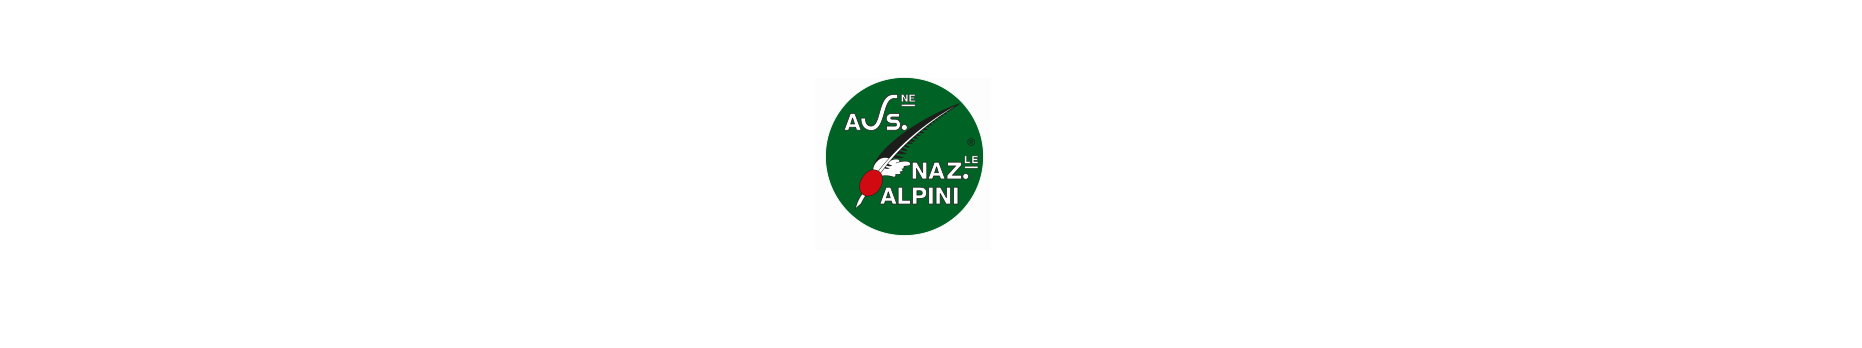 Associazione Nazionale Alpini - Gruppo Monte Ortigara - logo